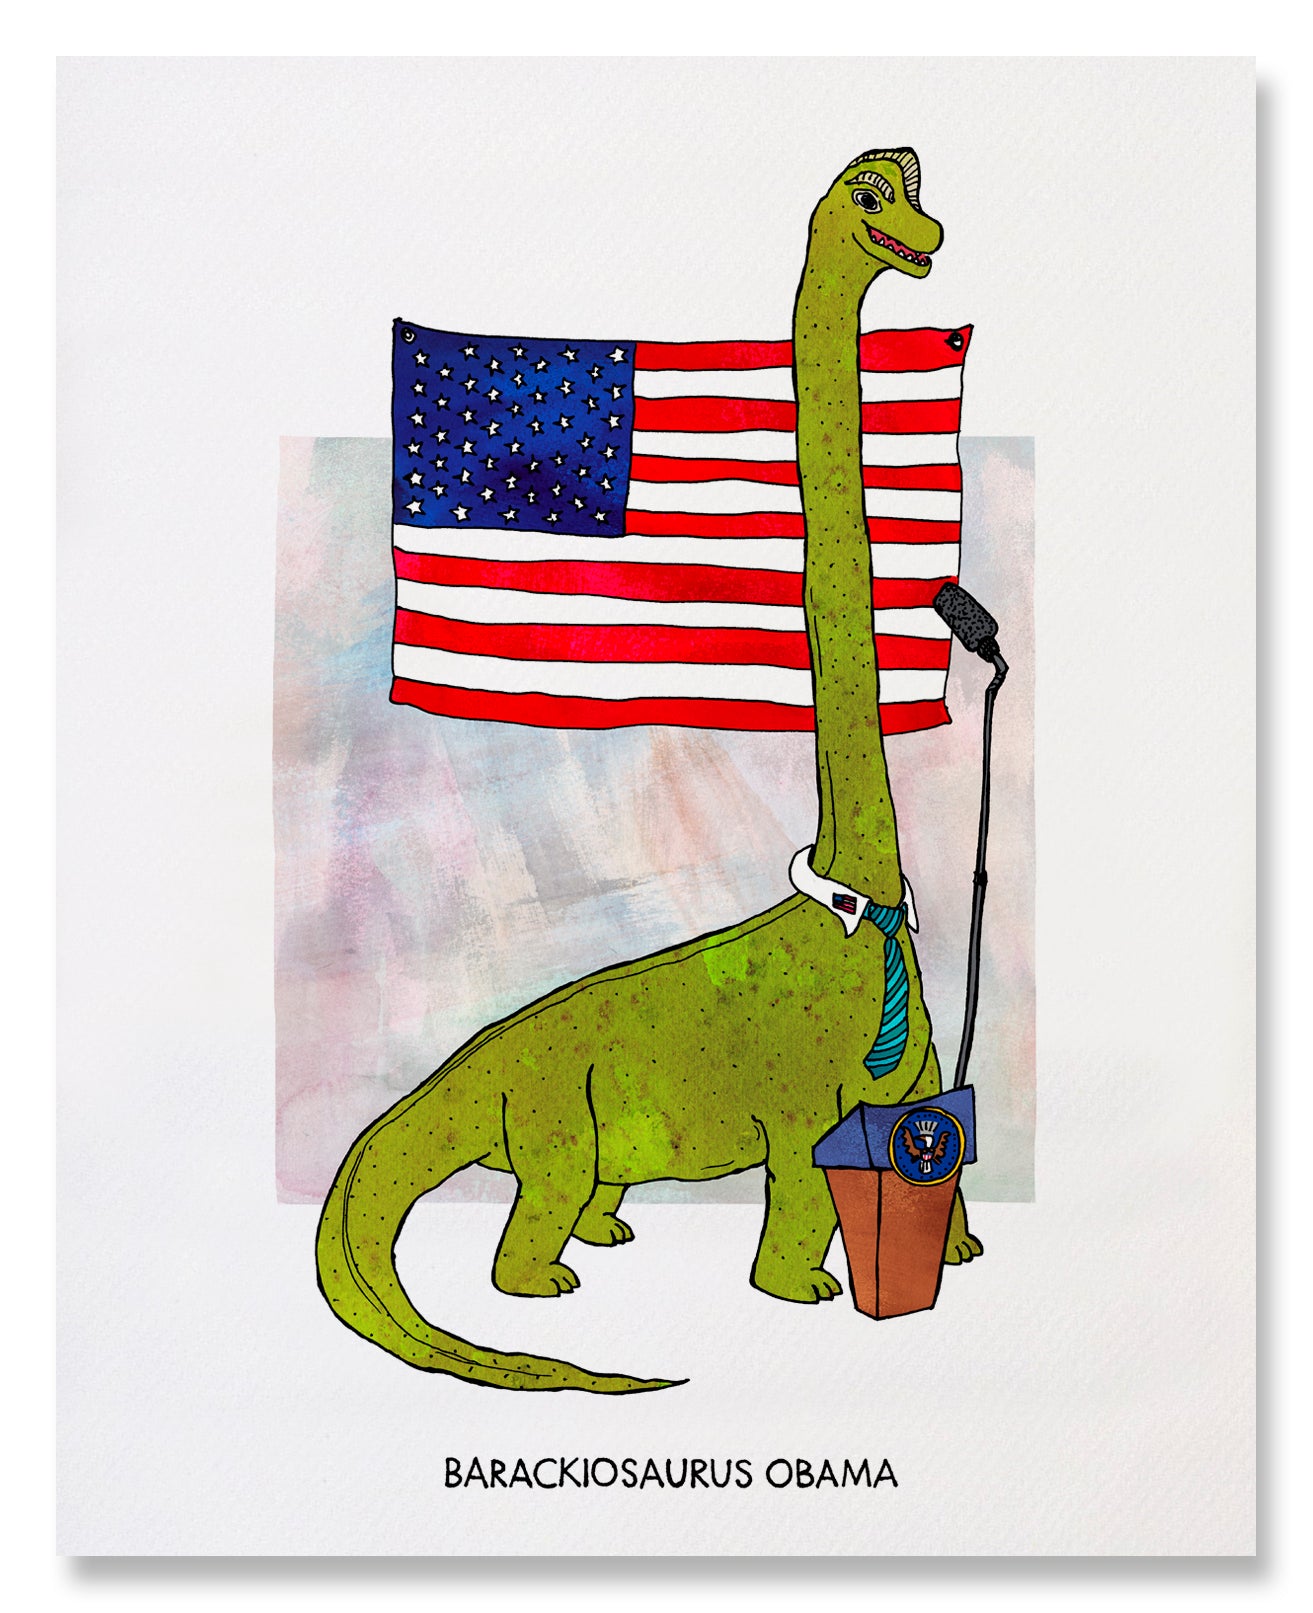 Barackiosaurus Obama - Illustrated Funny Pun Everyday Card